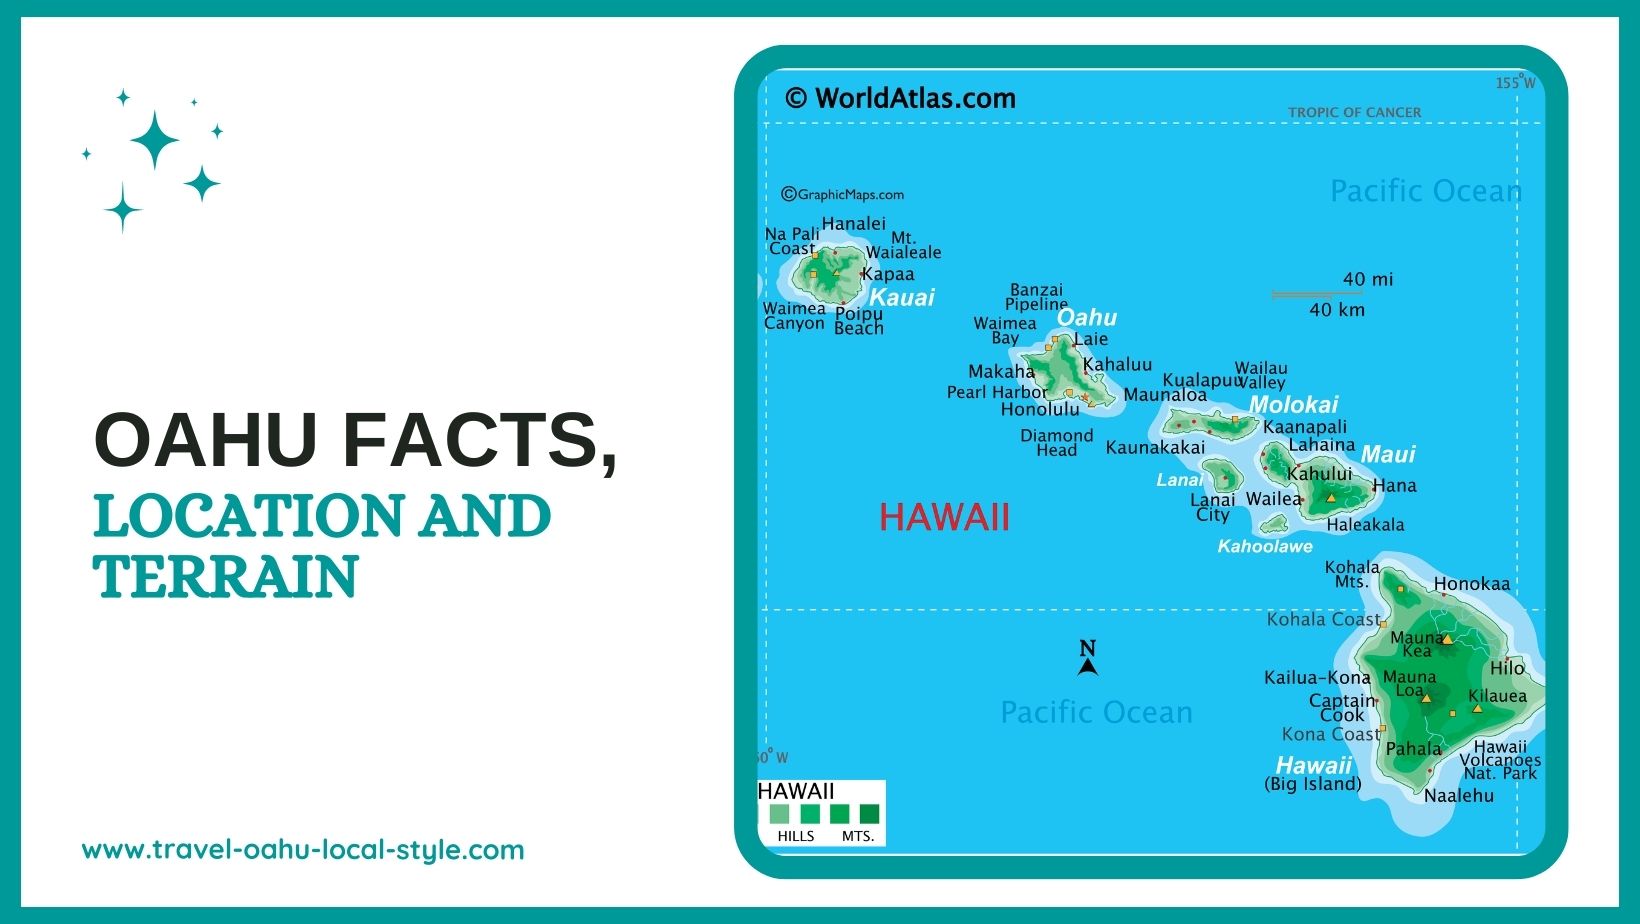 Oahu Facts